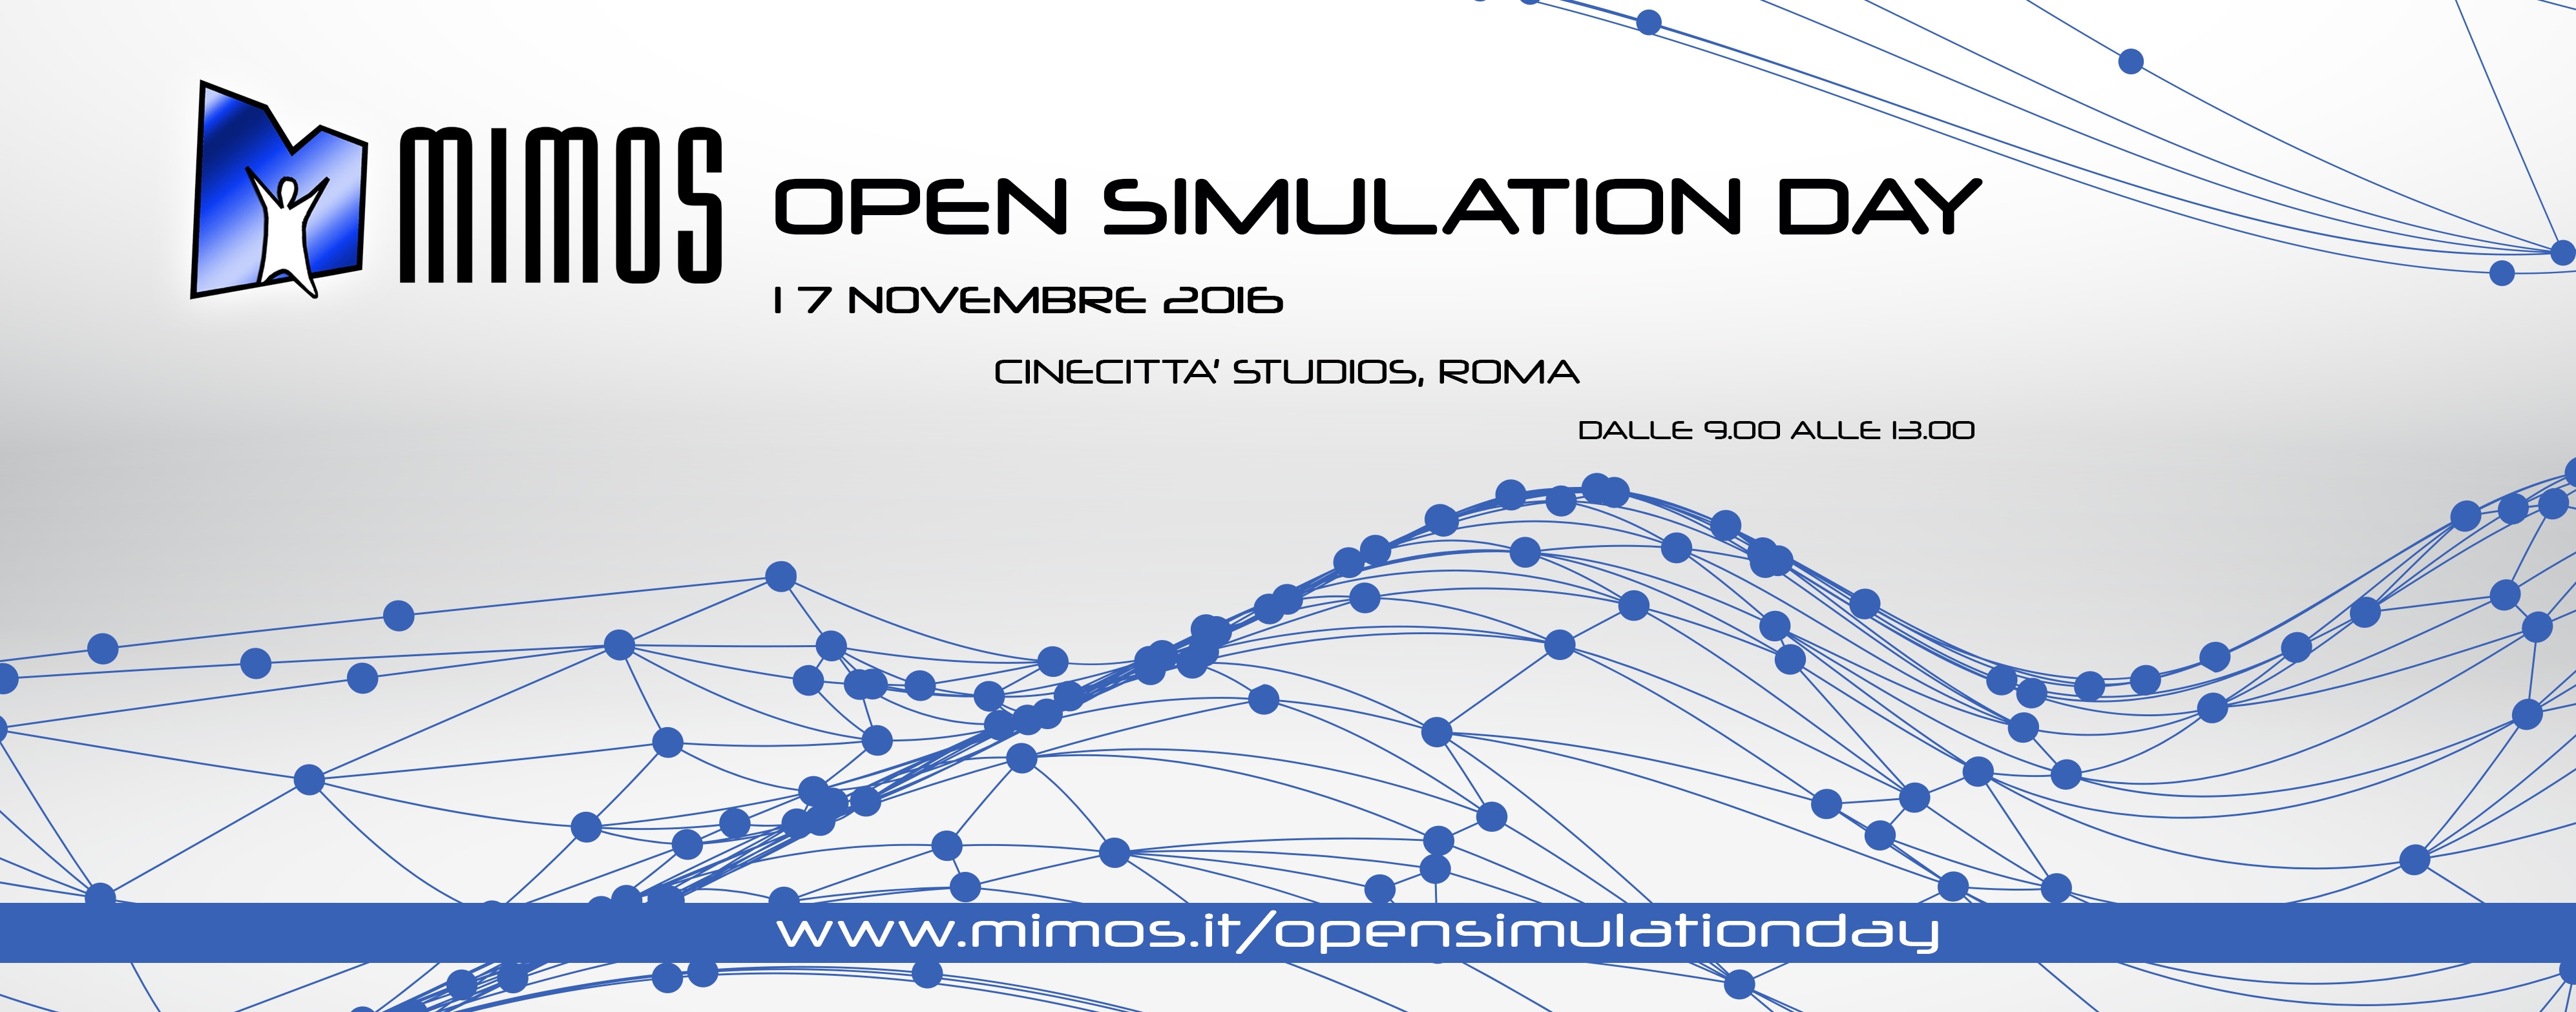 MIMOS Open Simulation Day: il programma